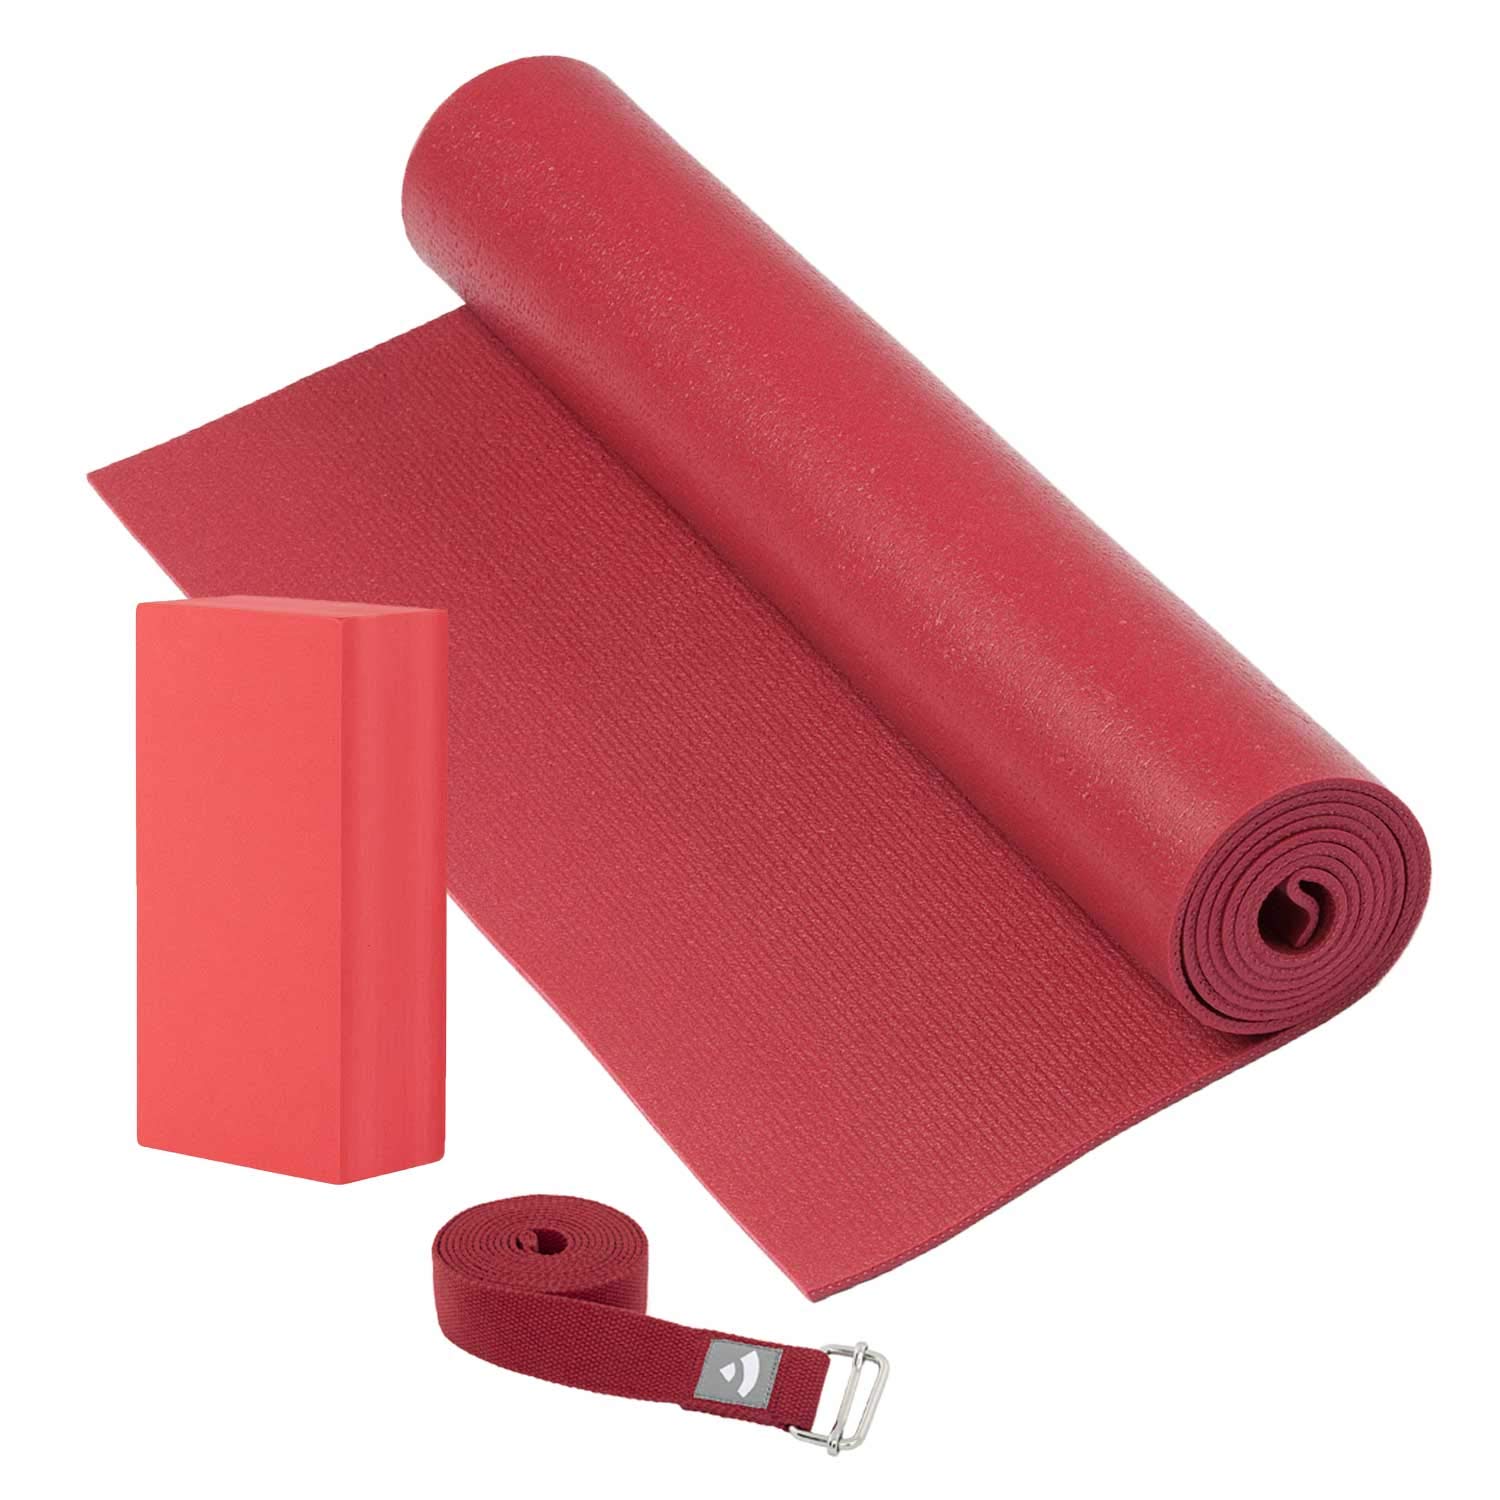 Yogamatte (4,5 mm), bordeaux/wein-rot im Set mit Yoga Block und Yogagurt, strapazierfähige Yogamatte aus PVC, Komplett-Set, Yoga Set